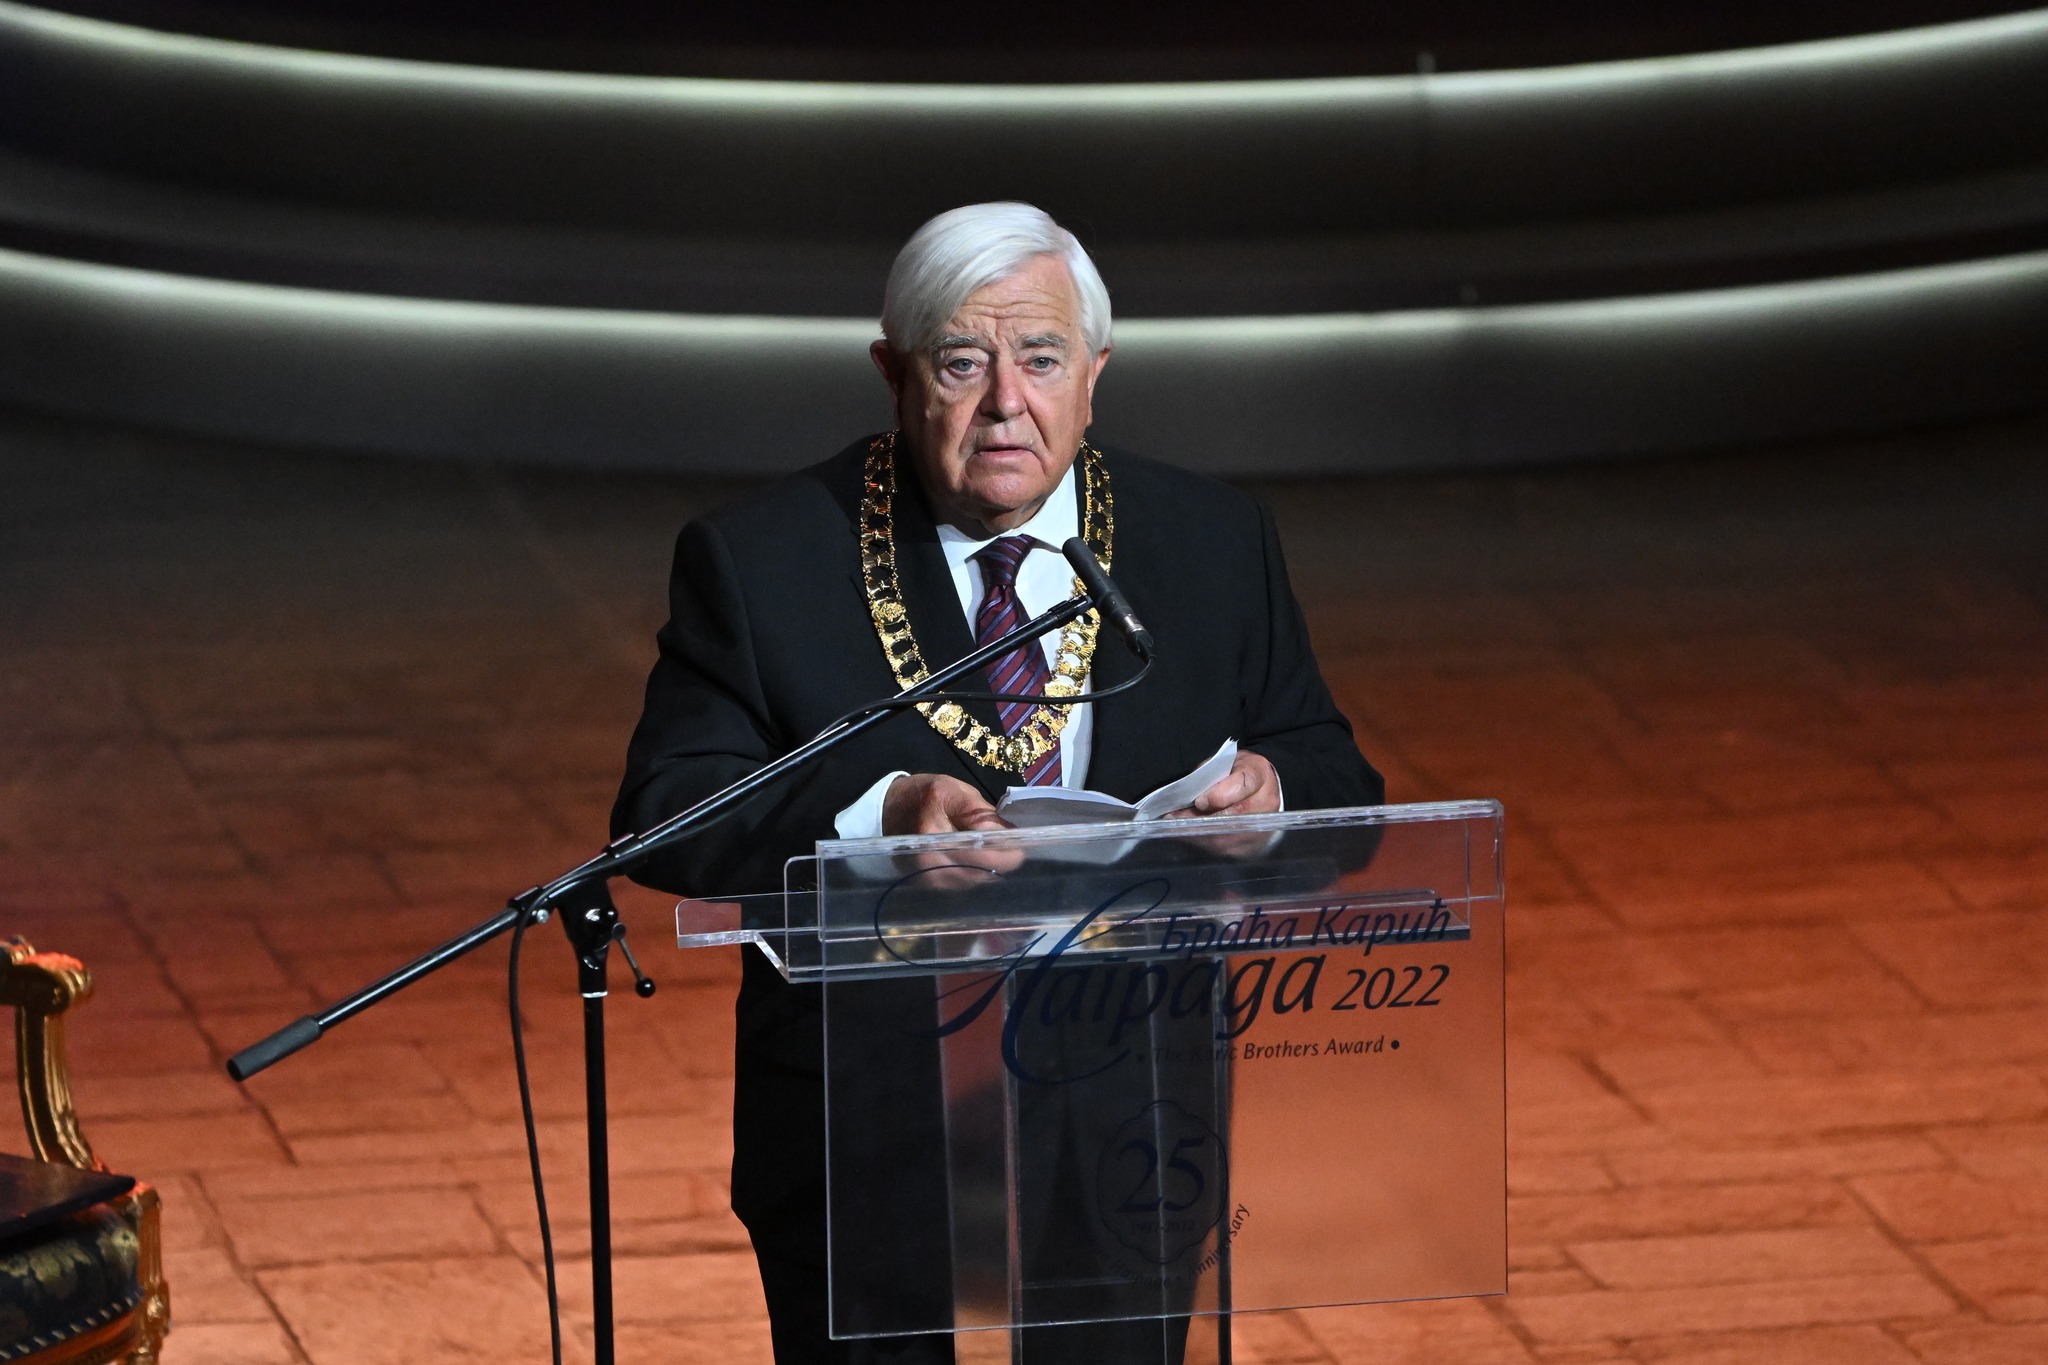 (VIDEO) Milan Kučan v Beogradu prejel prestižno priznanje, ki ga nekateri imenujejo kar  “balkanska Nobelova nagrada” – Jubilejna 25. podelitev nagrad fondacije “Braće Karić”